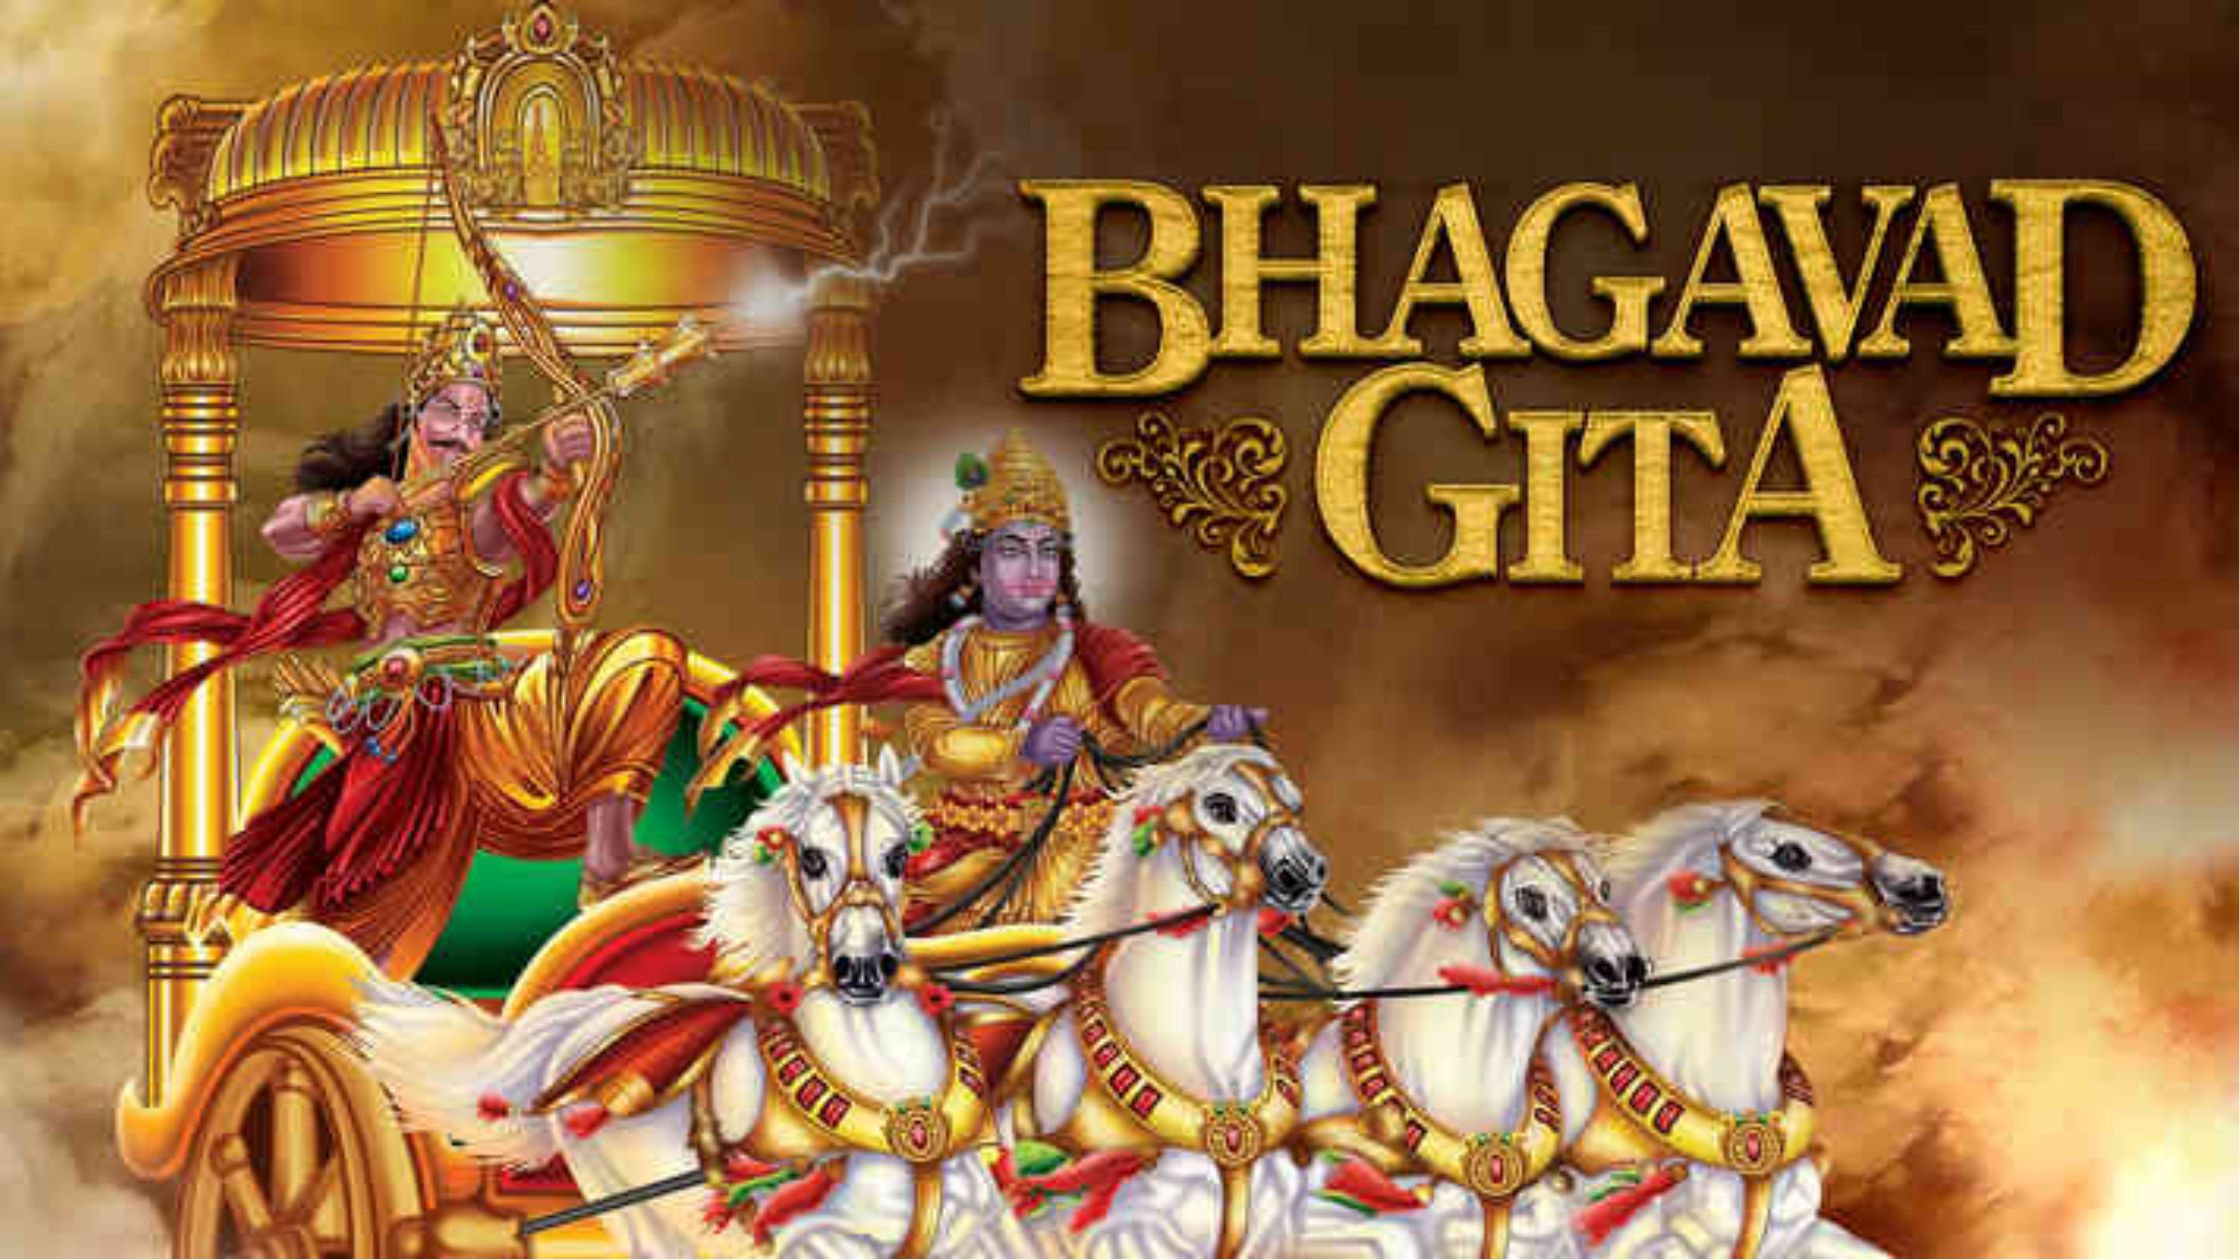 Krishna Bhagavad Gita